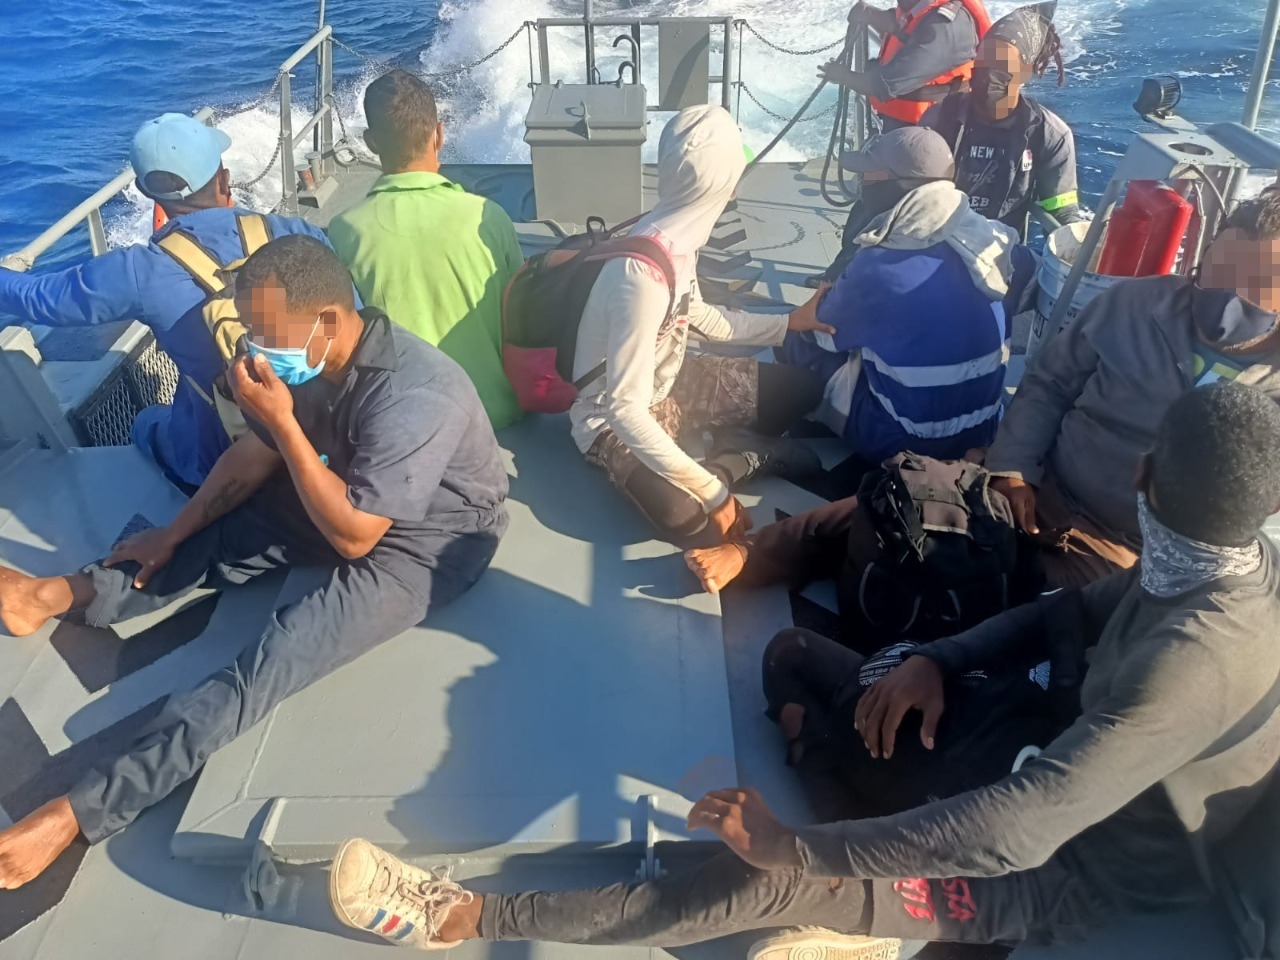 Los 8 sujetos fueron rescatados en medio del océano